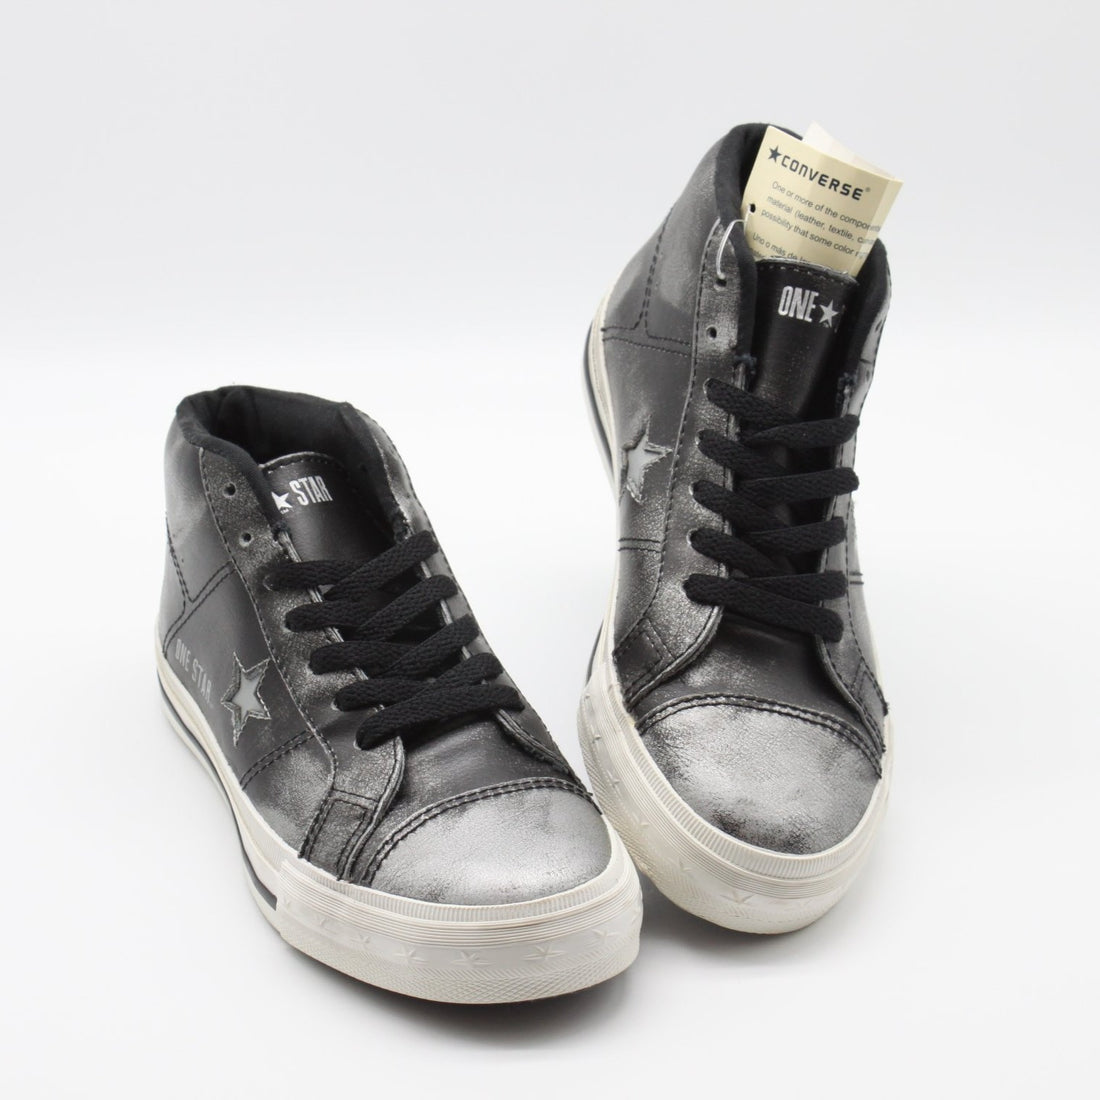 Schuhe - Halbschuhe - Converse - Chucks - 35 - schwarz/silber - Stern - Schnüre - sehr guter Zustand